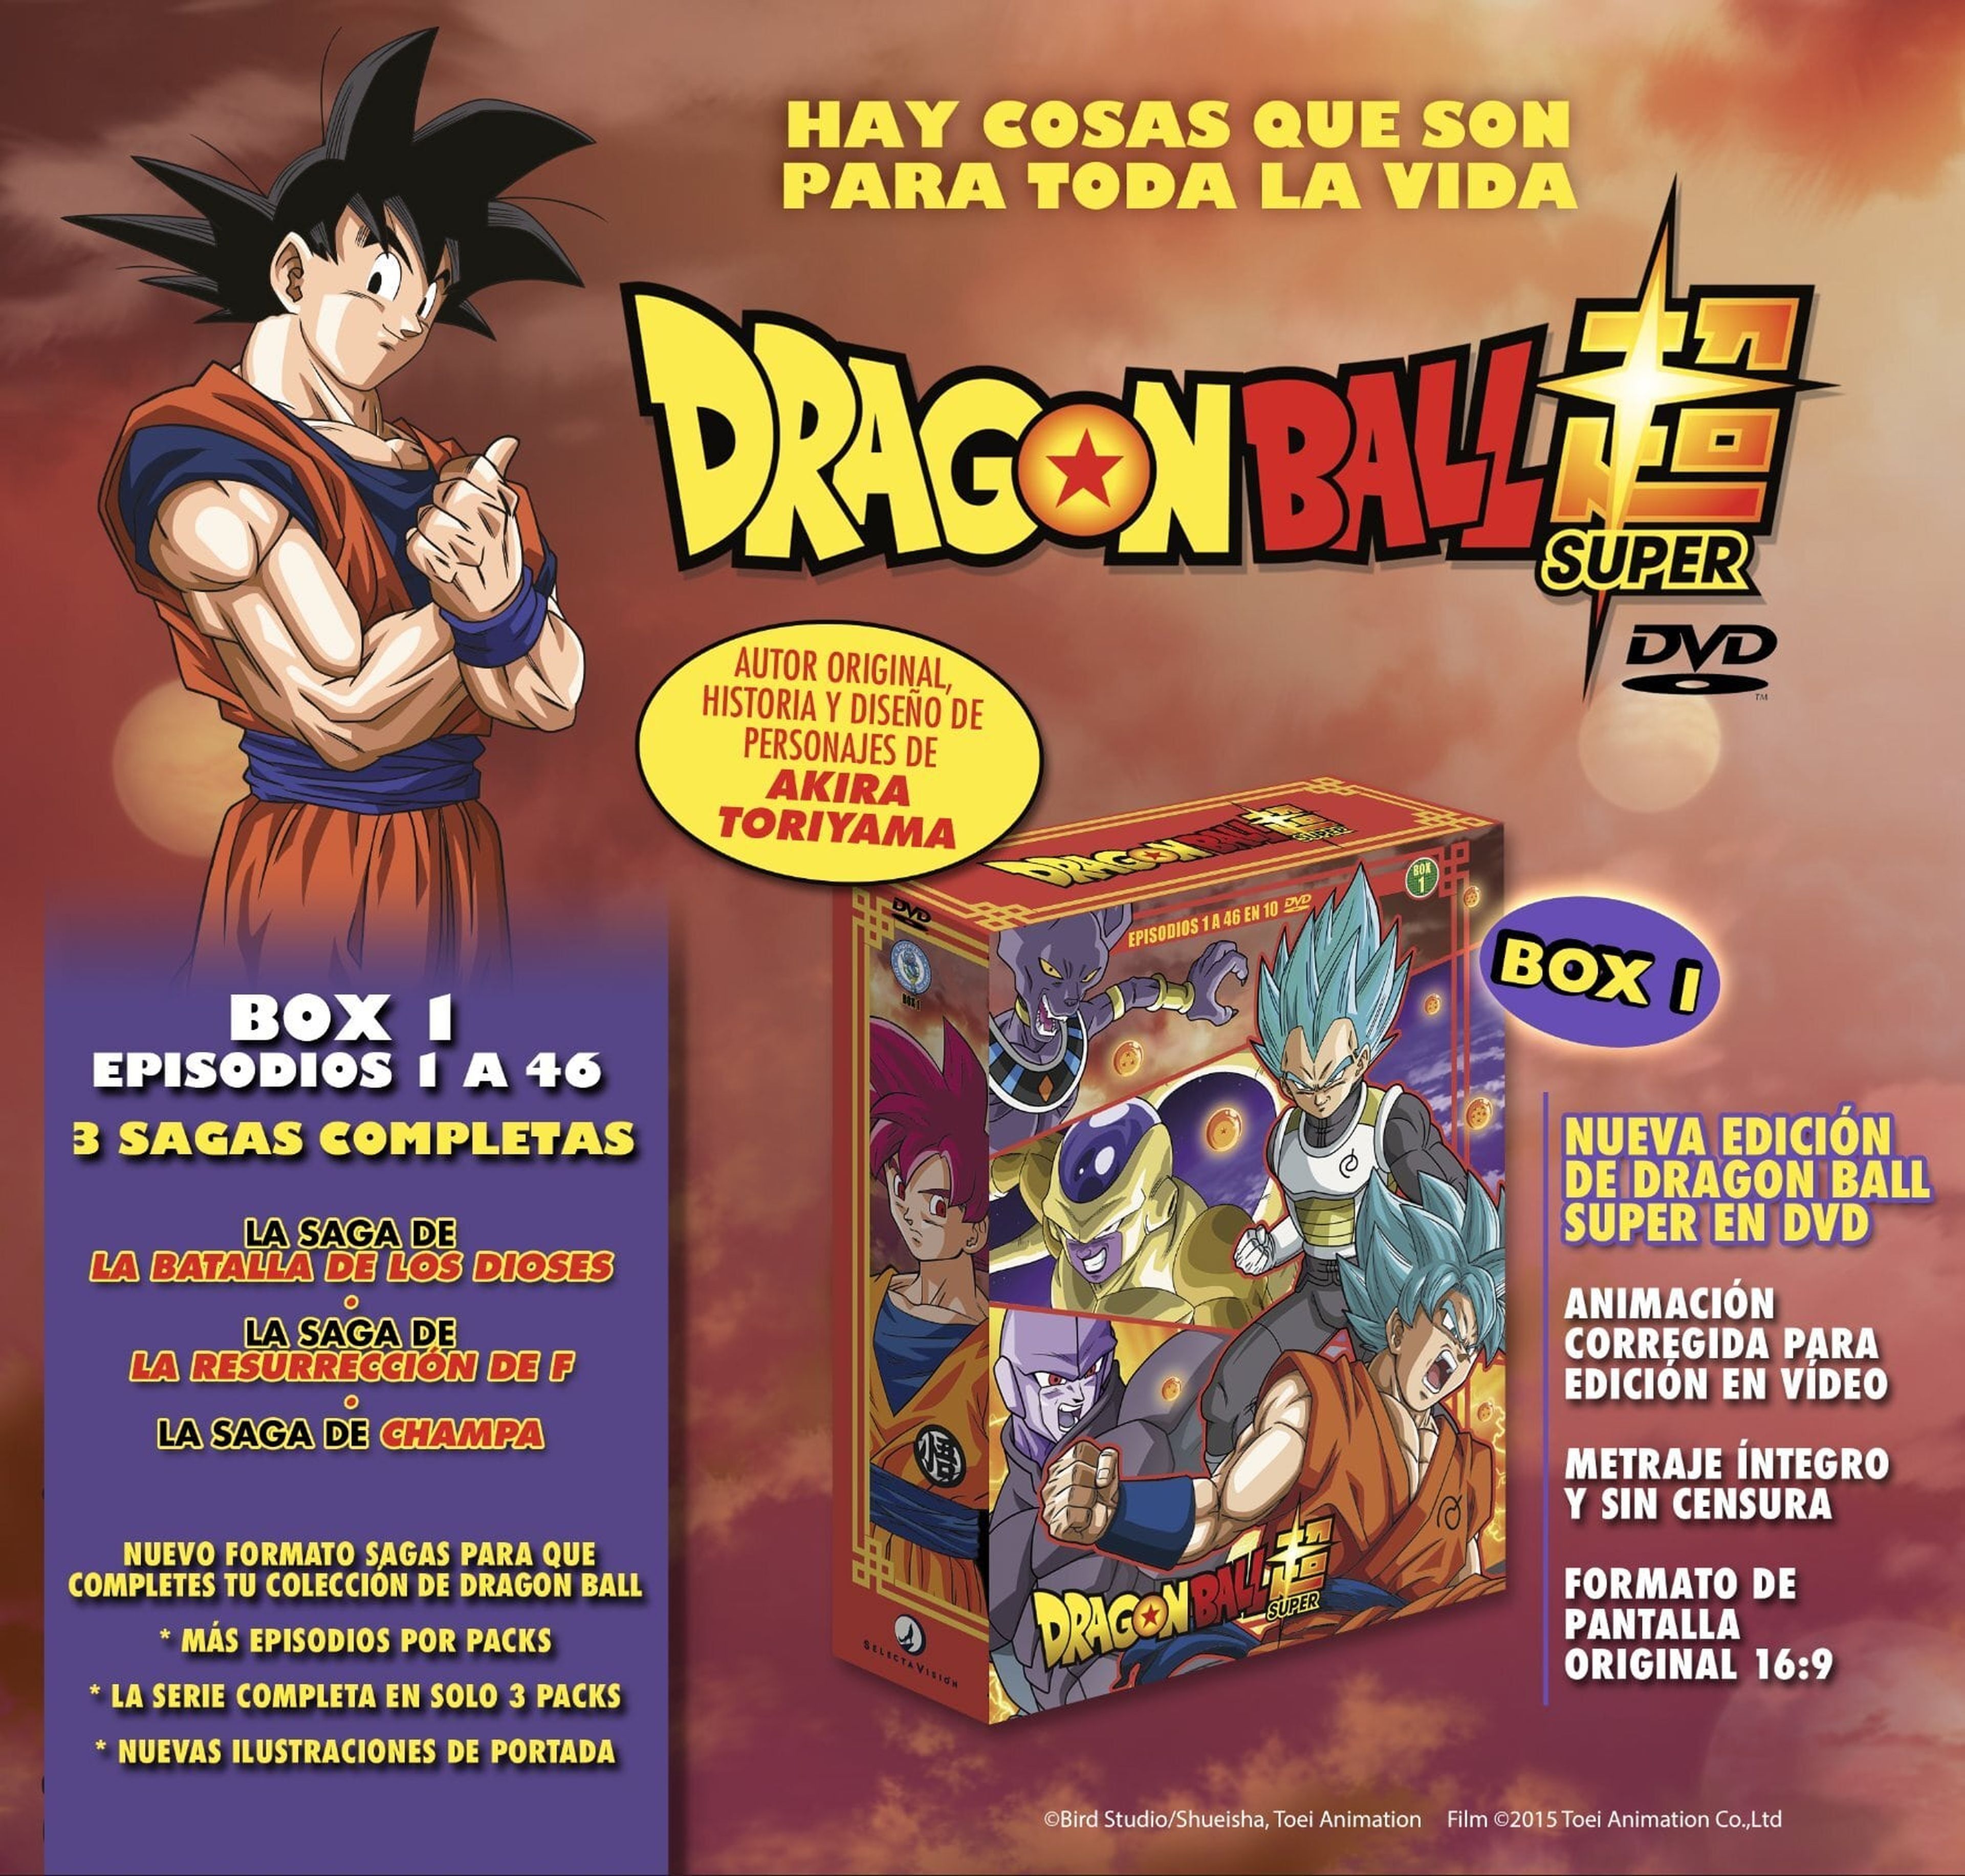 Dragon Ball Super - Anunciada una nueva edición en DVD de la serie. ¡La serie completa en tres cómodos estuches exclusivos en España!